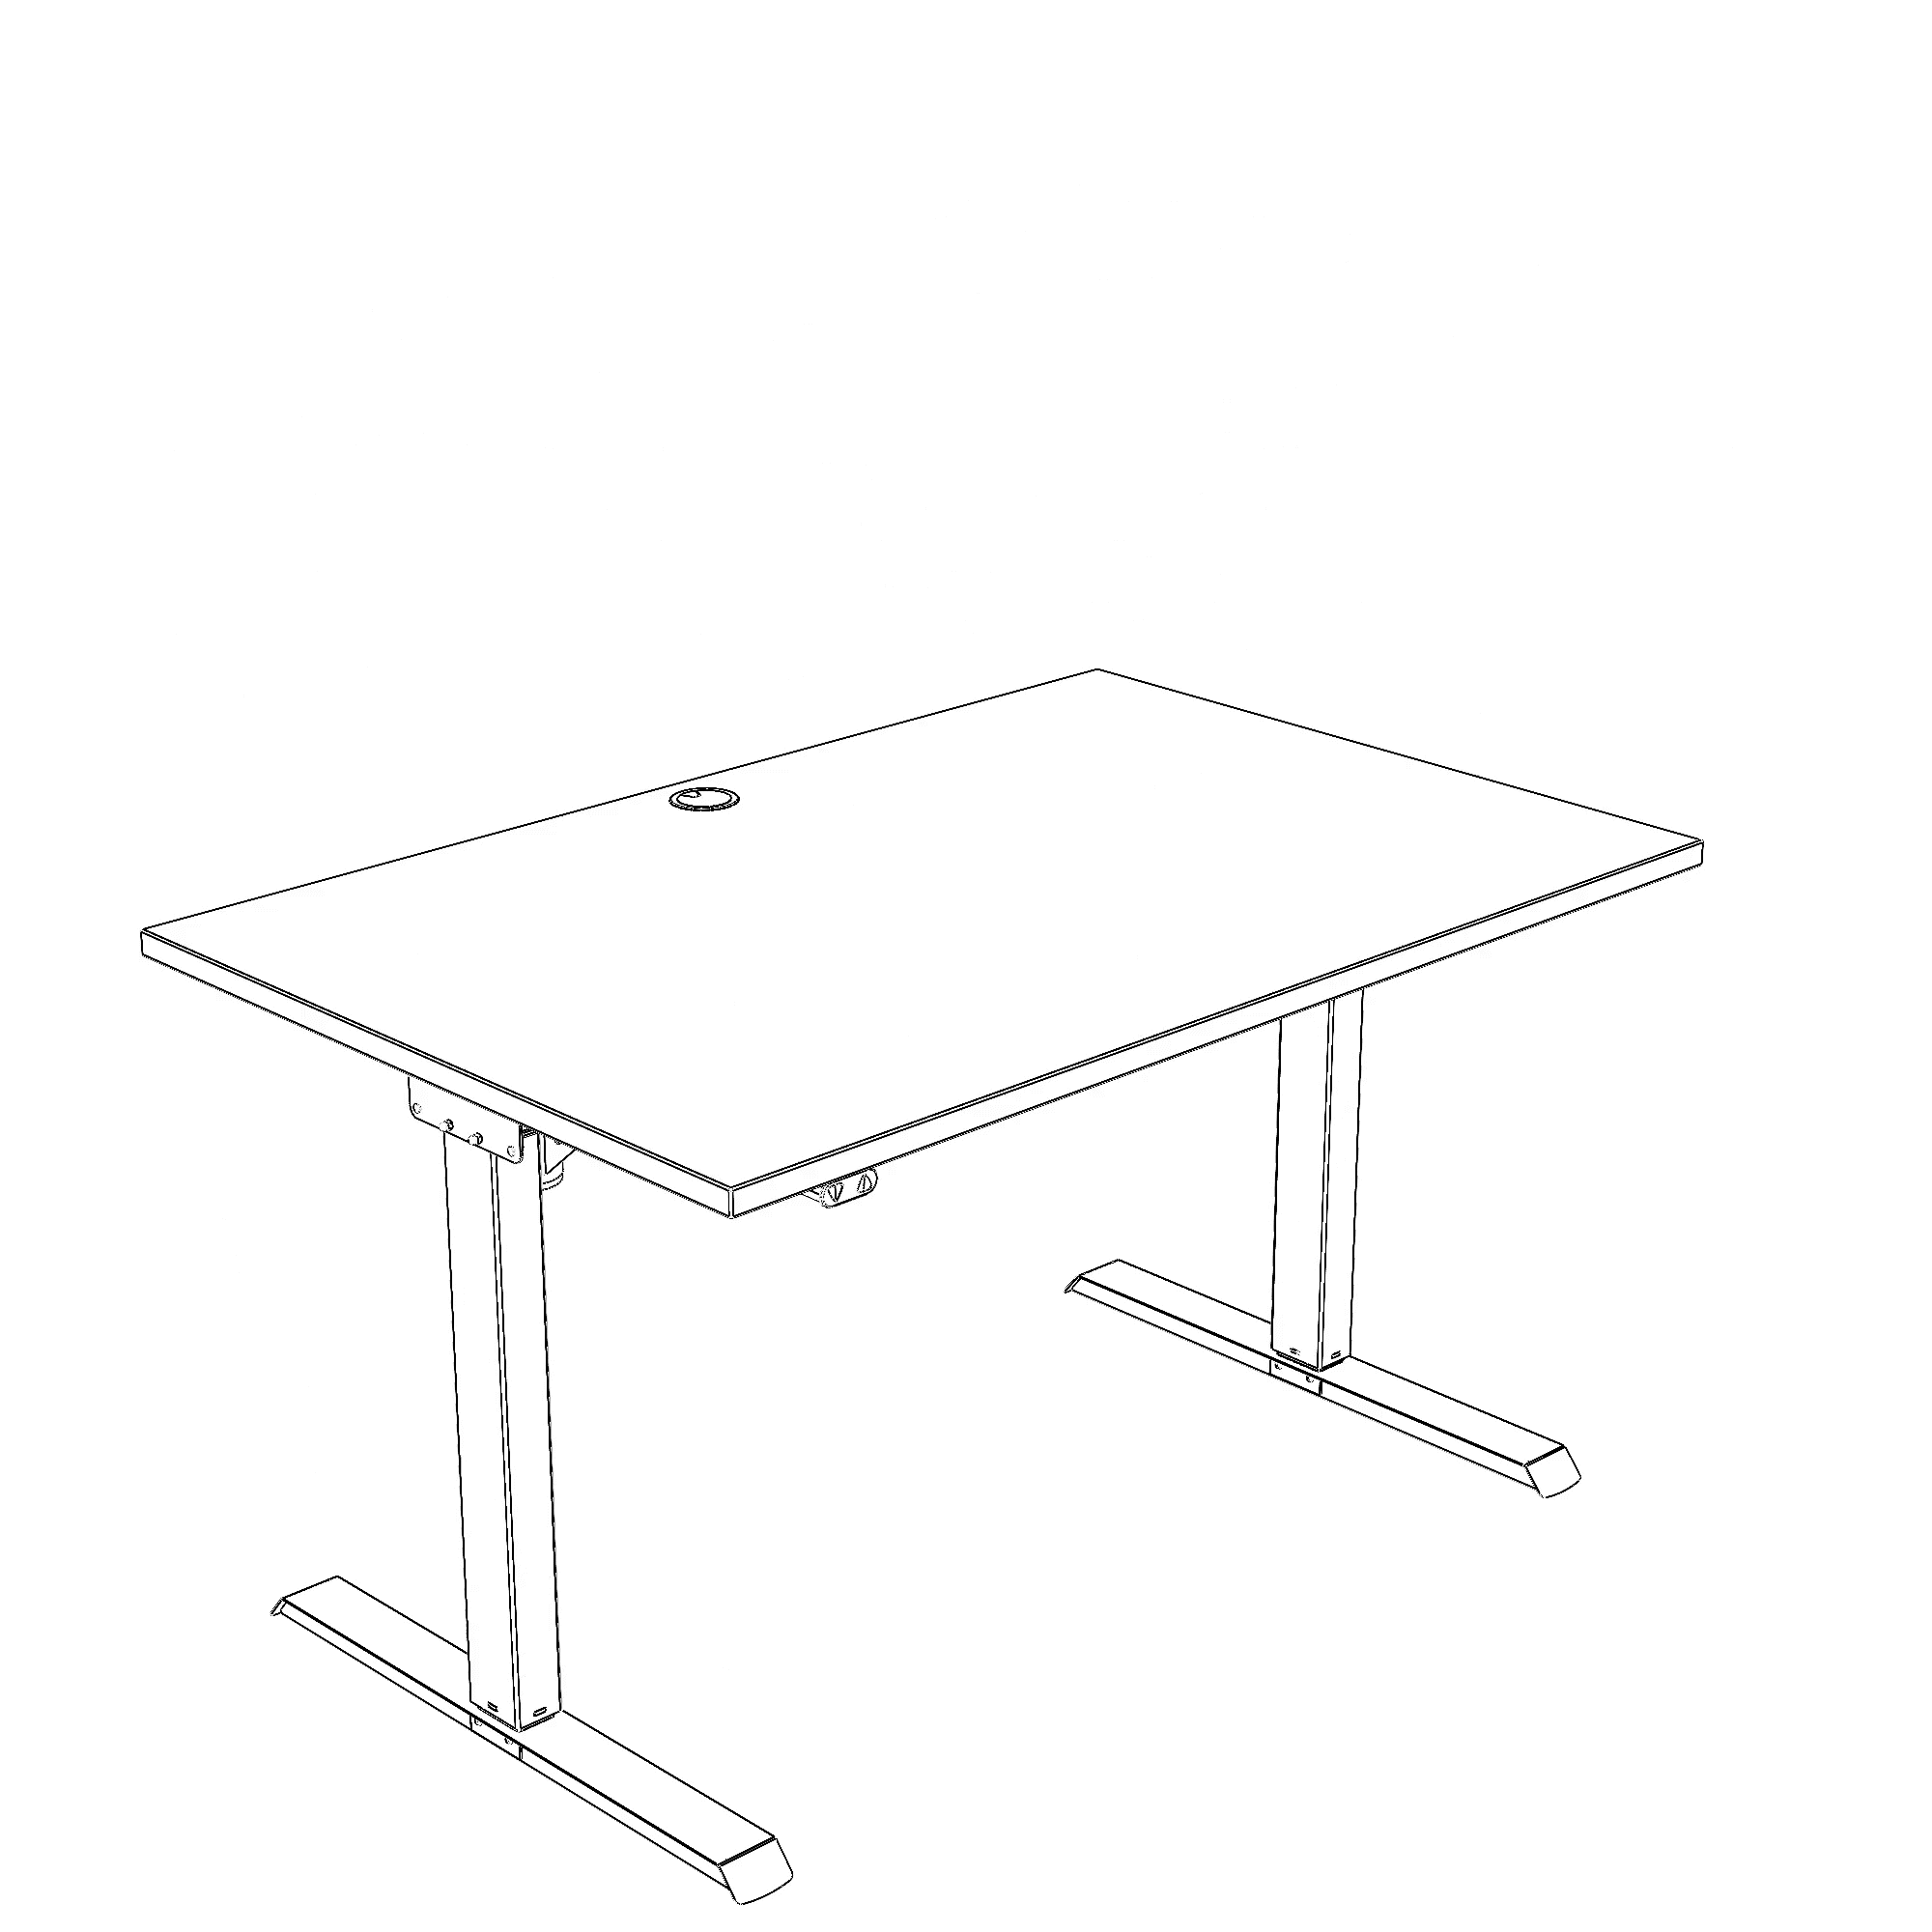 Schreibtisch steh/sitz | 120x80 cm | Buche mit weißem Gestell